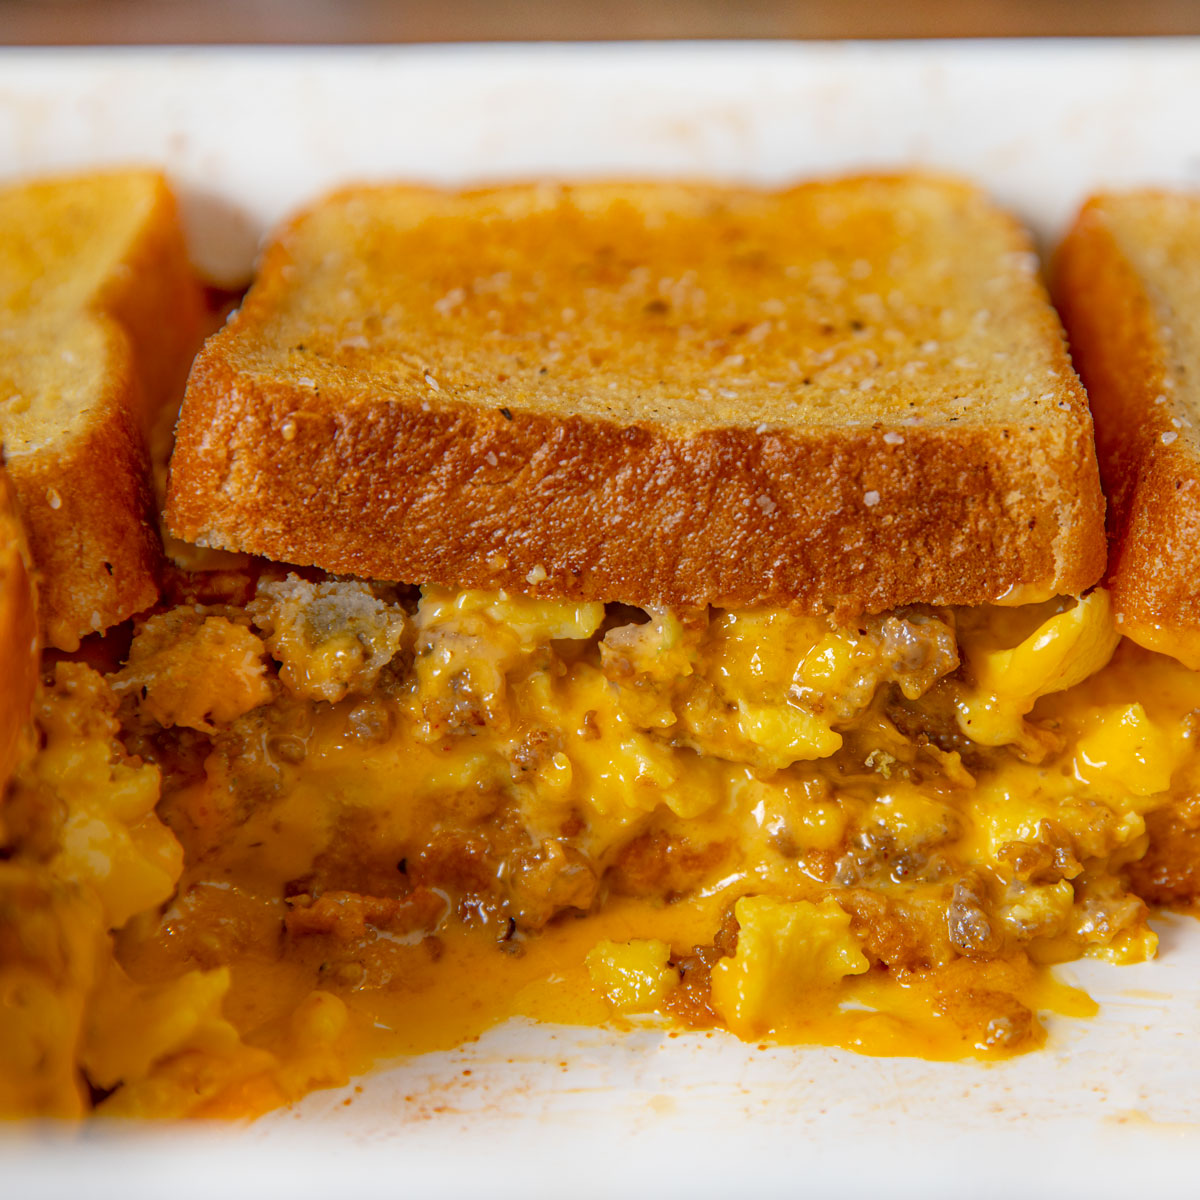 https://dinnerthendessert.com/wp-content/uploads/2019/12/Grilled-Cheese-Breakfast-Casserole-1x1-1.jpg